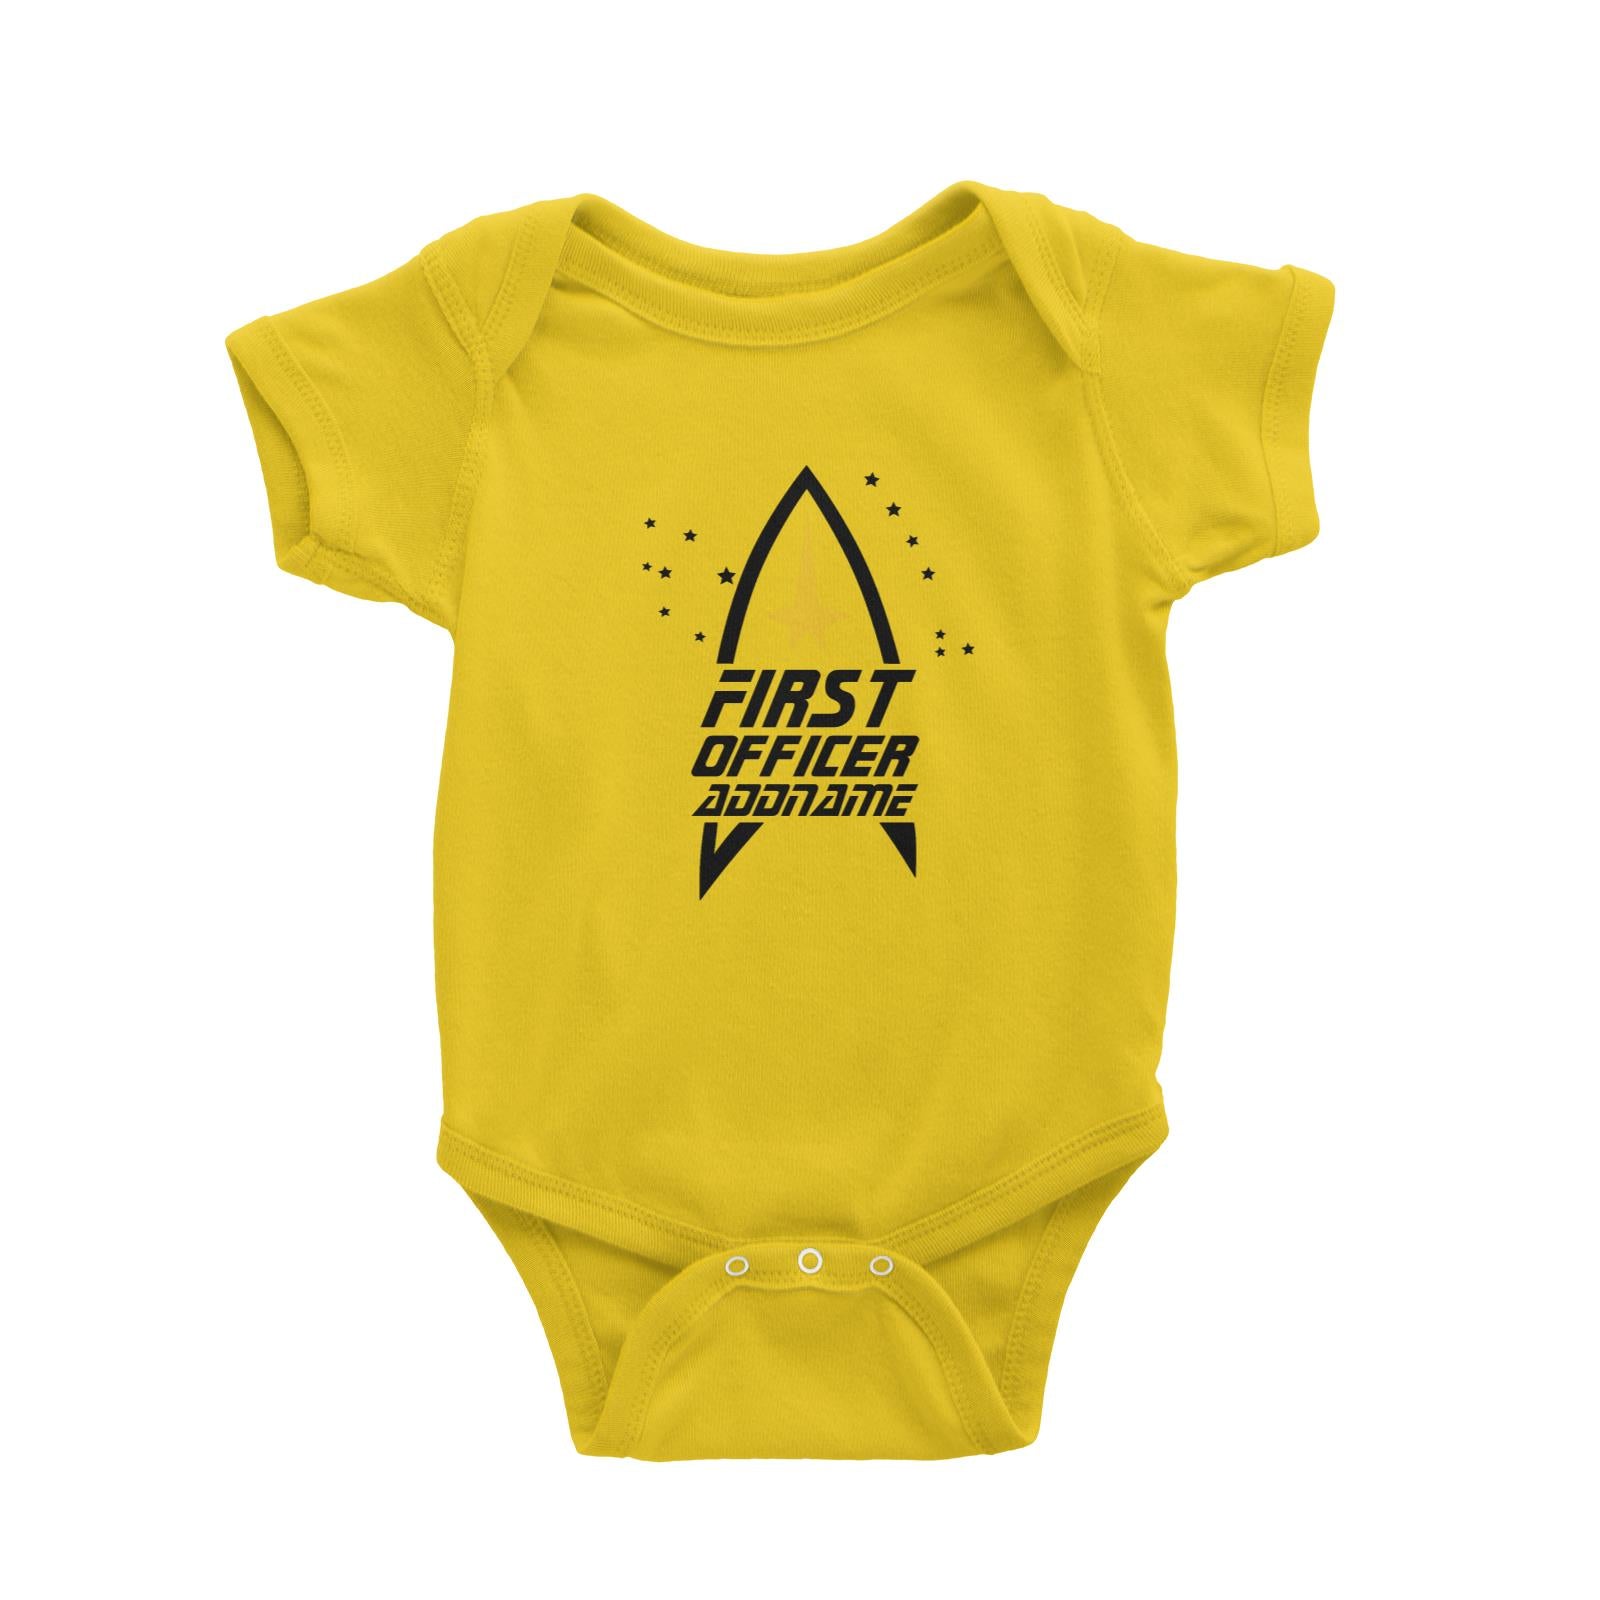 Star Trek First Officer Baby Romper